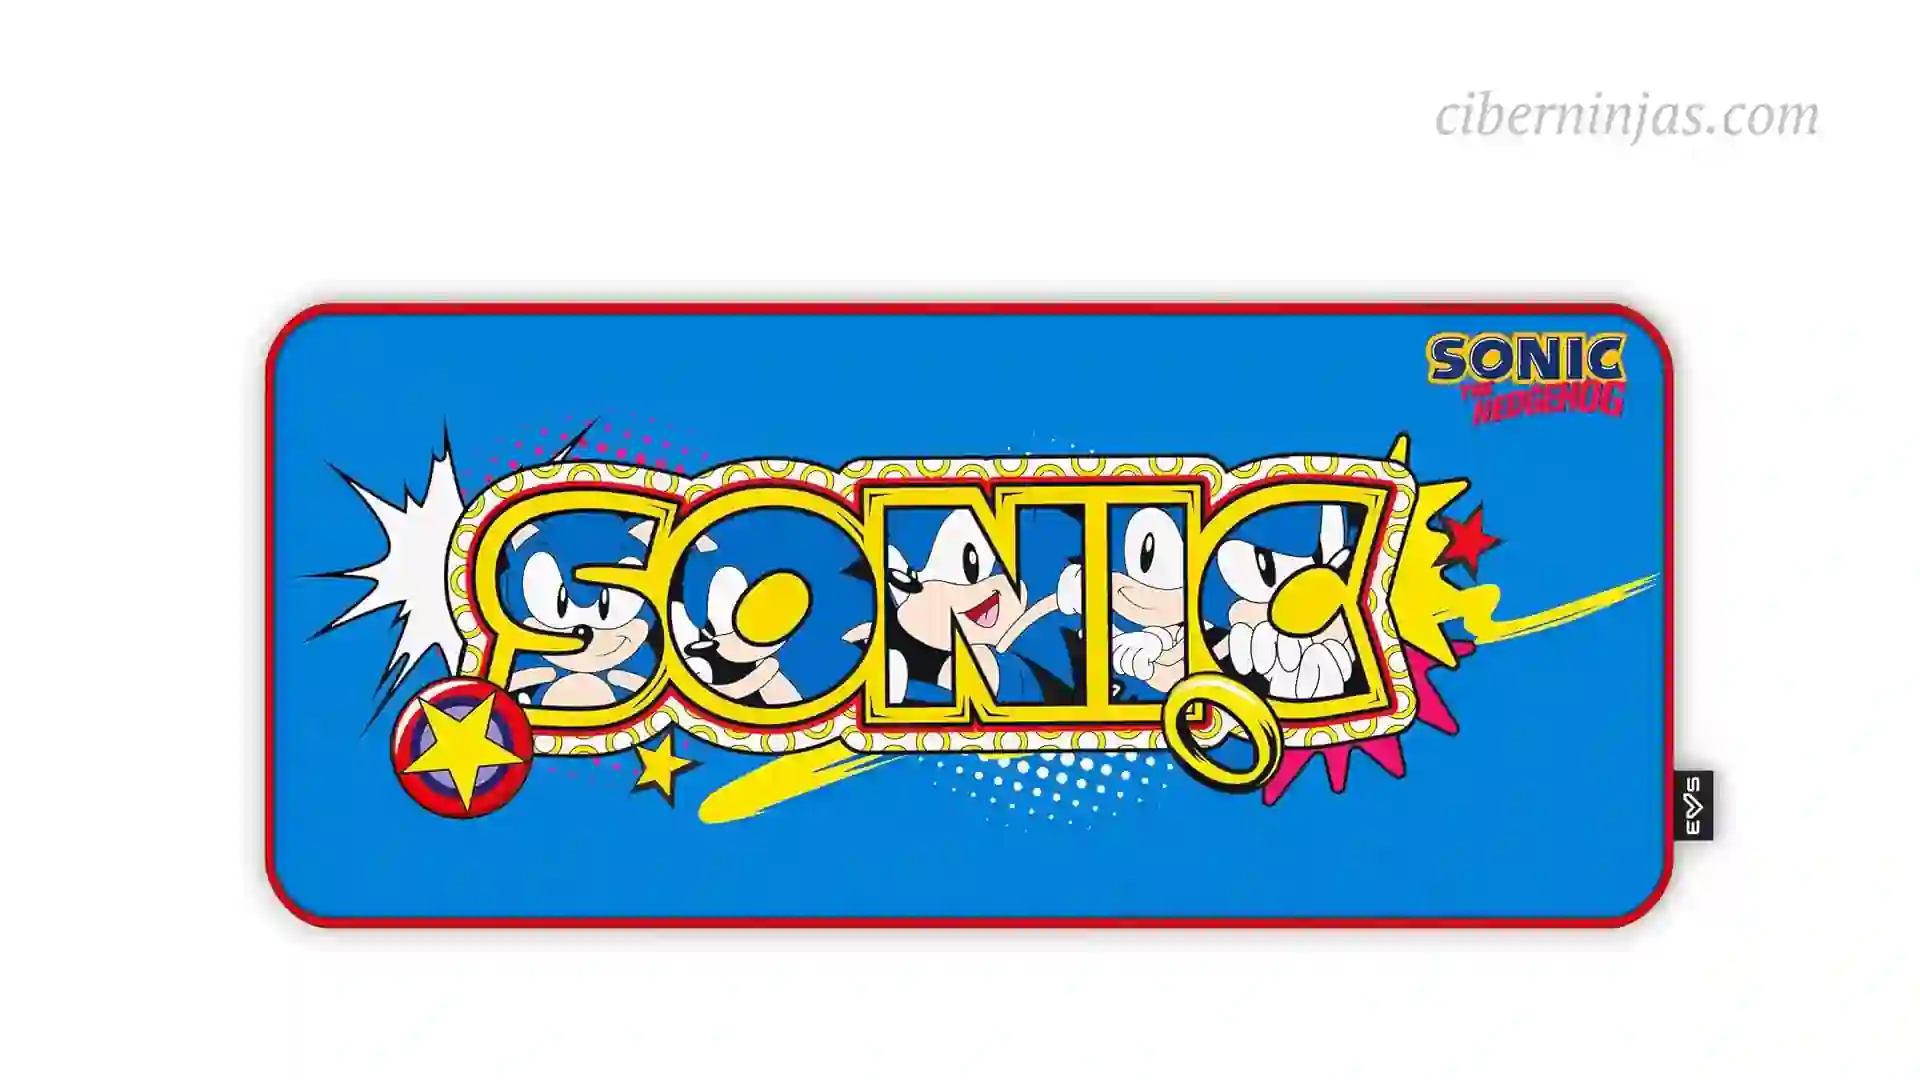 Black Friday: Alfombrilla (mousepad) de 90x40 Dibujo Sonic Rebajado 55% de su Precio Habitual, solo por 9,99 euros